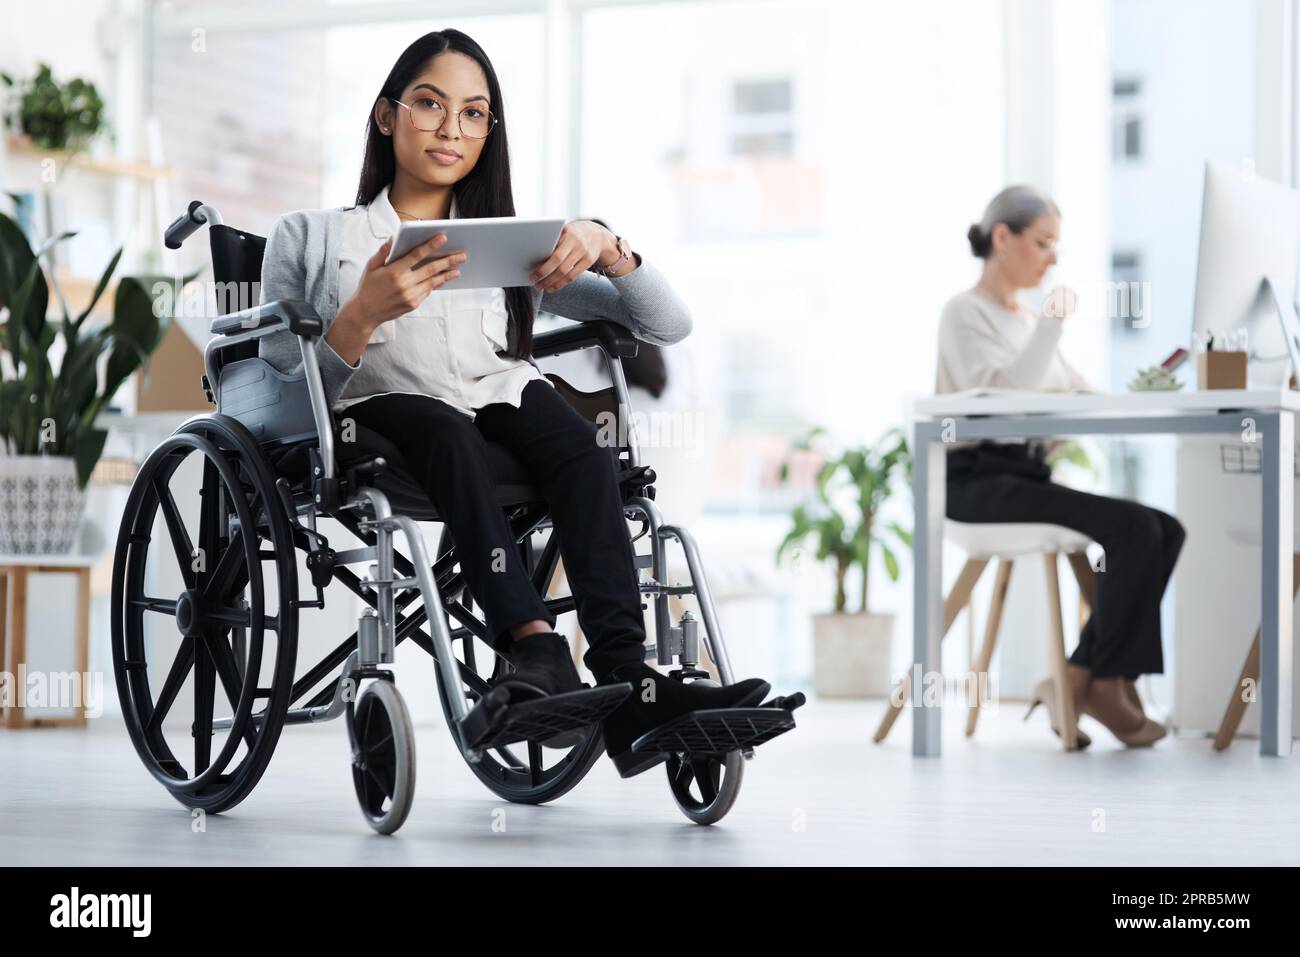 Auf Erfolg ausgerichtet. Ganzkörperportrait einer attraktiven jungen Geschäftsfrau im Rollstuhl, die ihr Tablet im Büro benutzt. Stockfoto